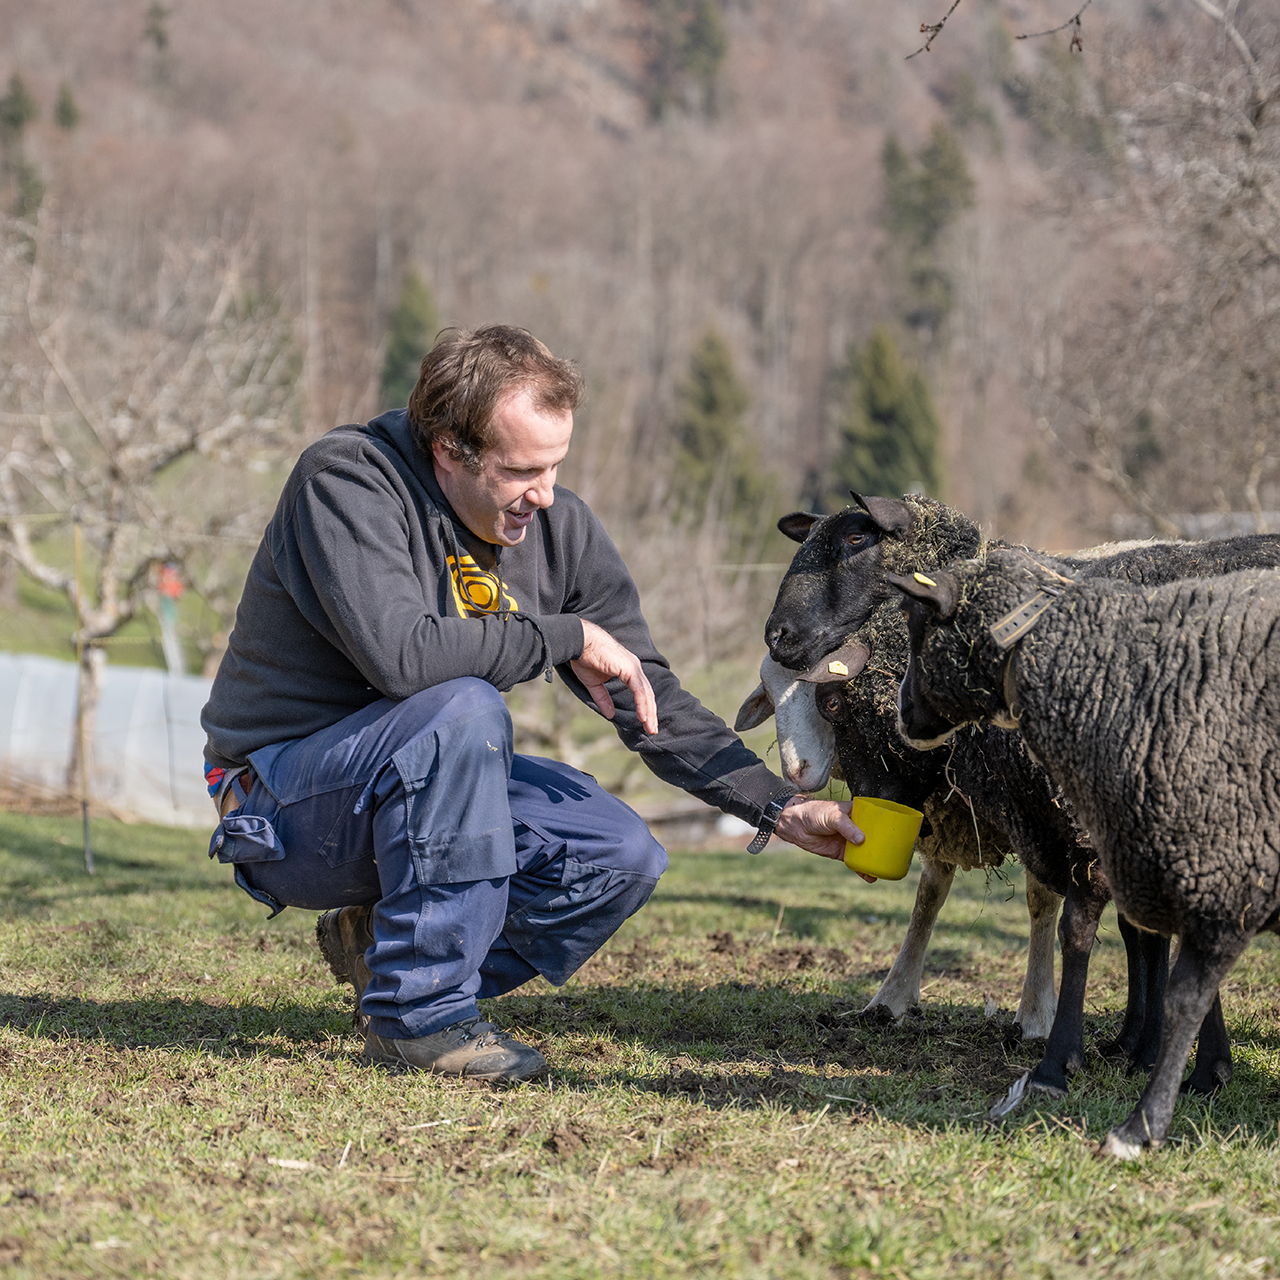 WG Alpenhof – wir leben mit viel Respekt auf einem kleinen Bauernhof